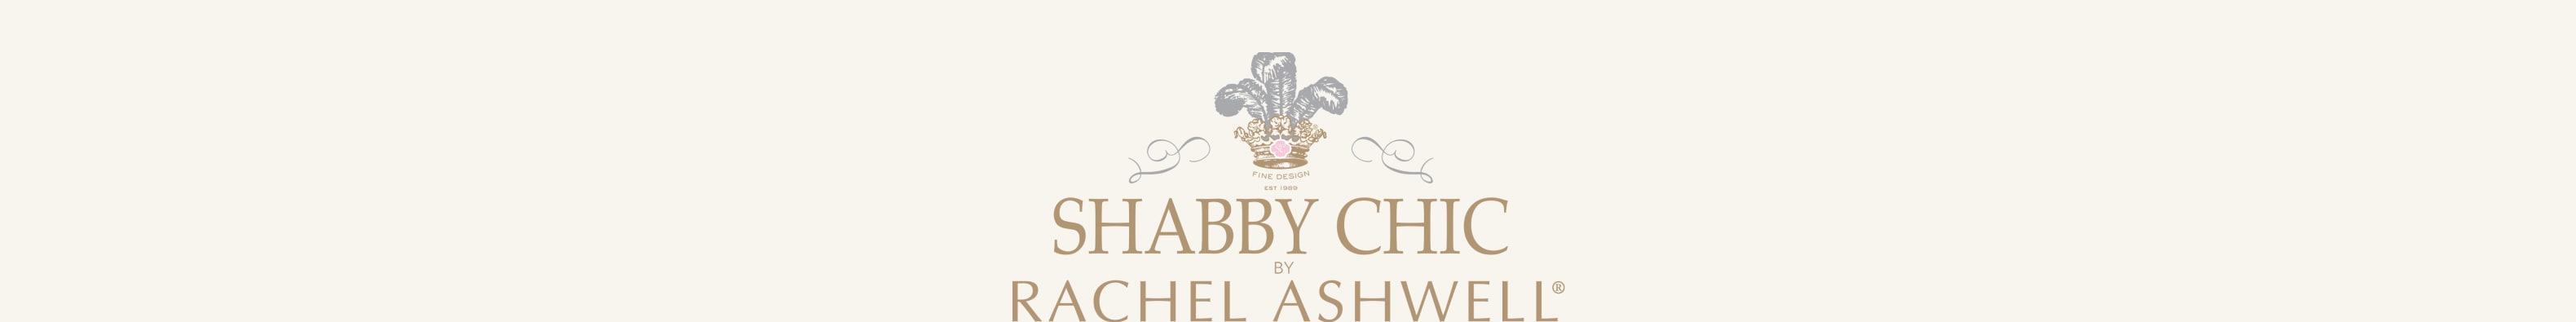 ShabbyChic_Editorial_Logo_8x1